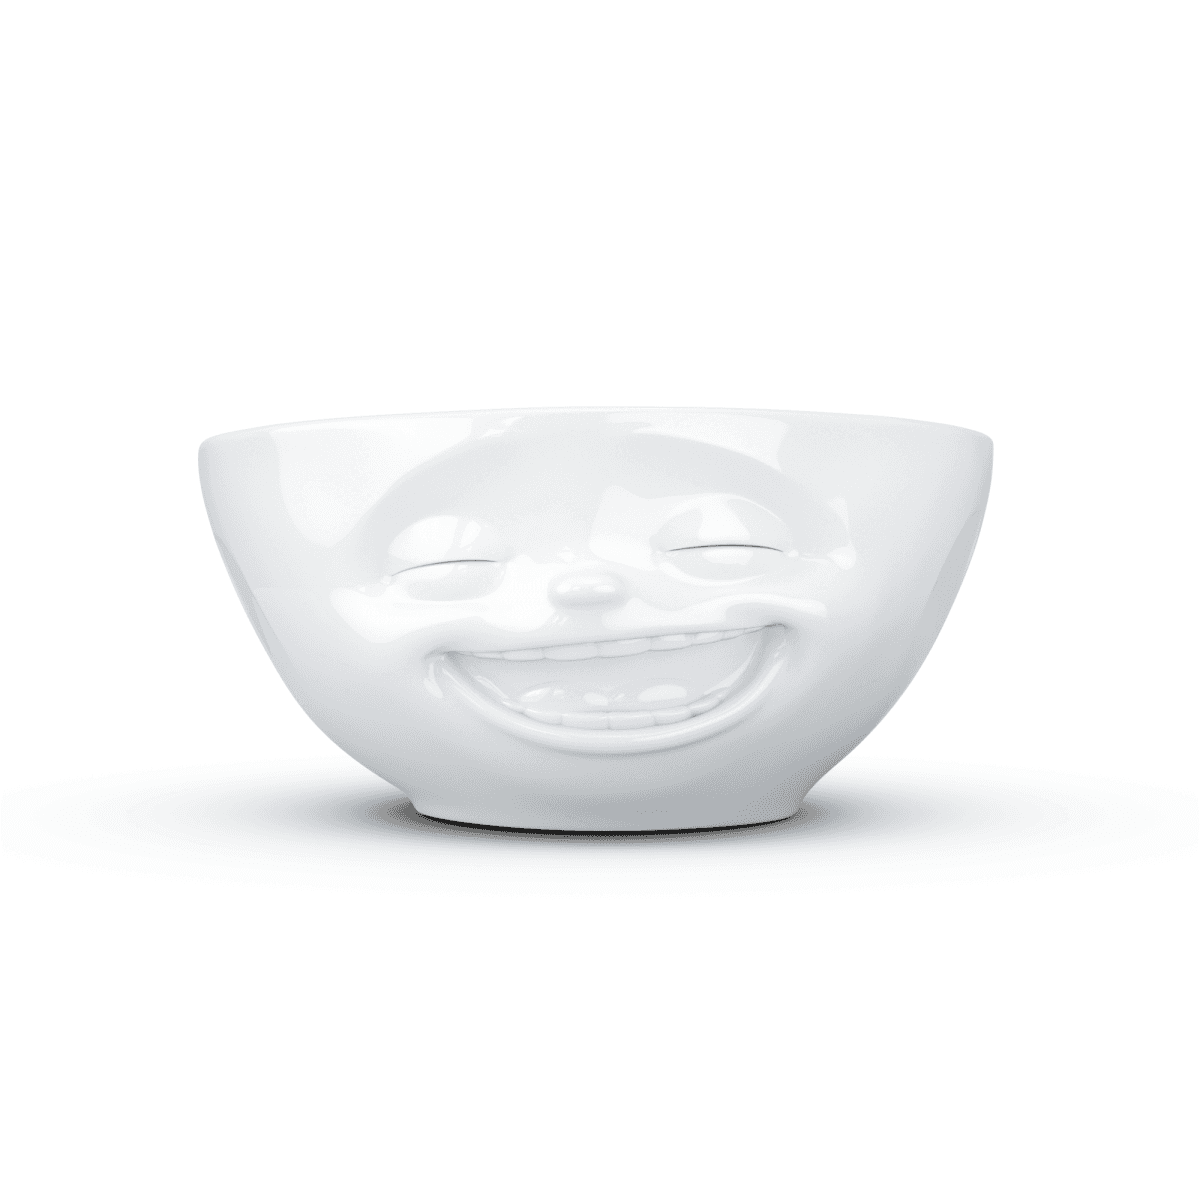 Immagine del prodotto Ciotola Risata 3D in Porcellana 350 ml | TASSEN By Fiftyeight Products